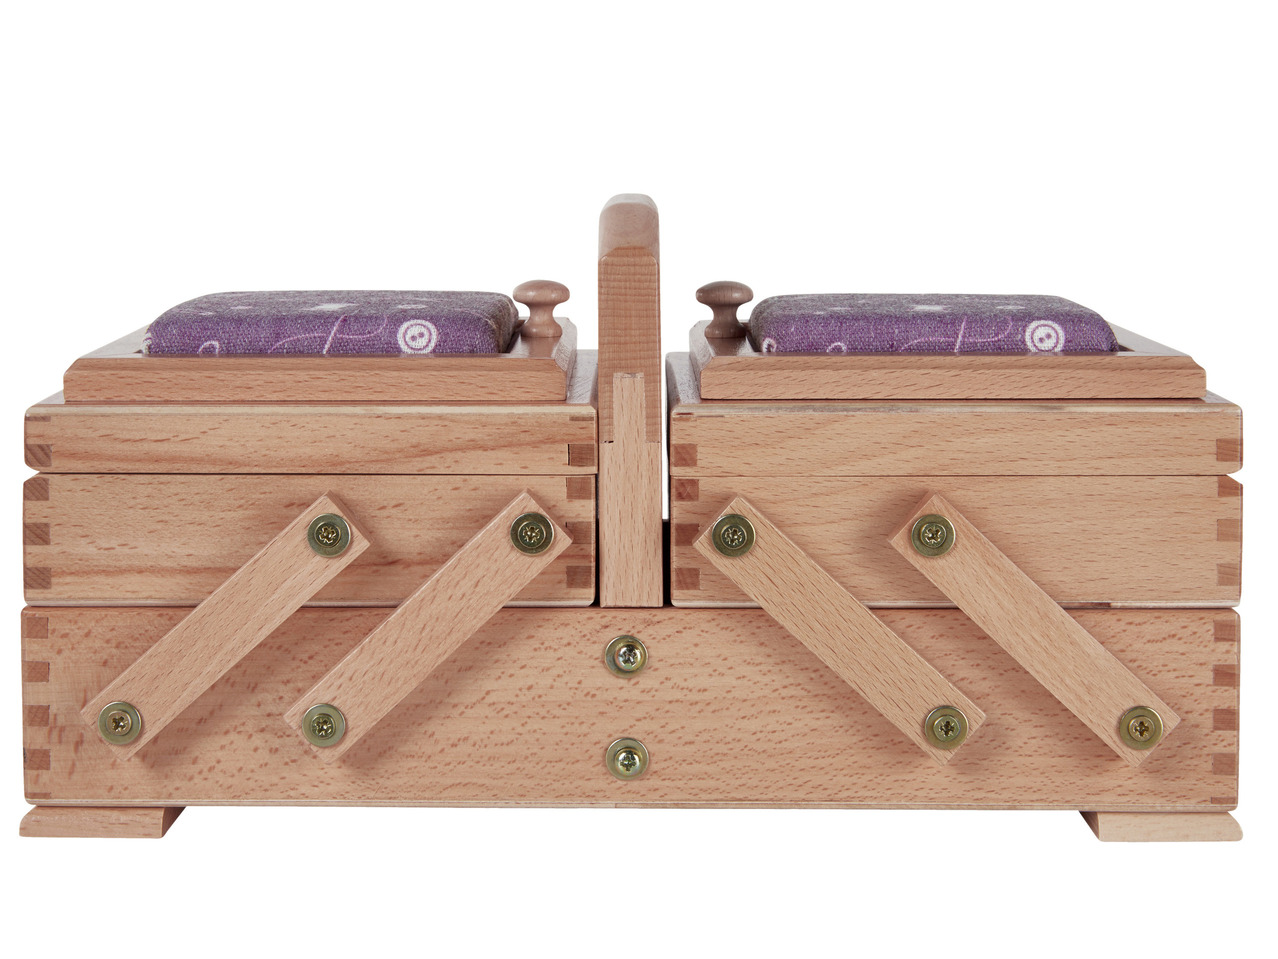 CRELANDO Cantilever Sewing Box